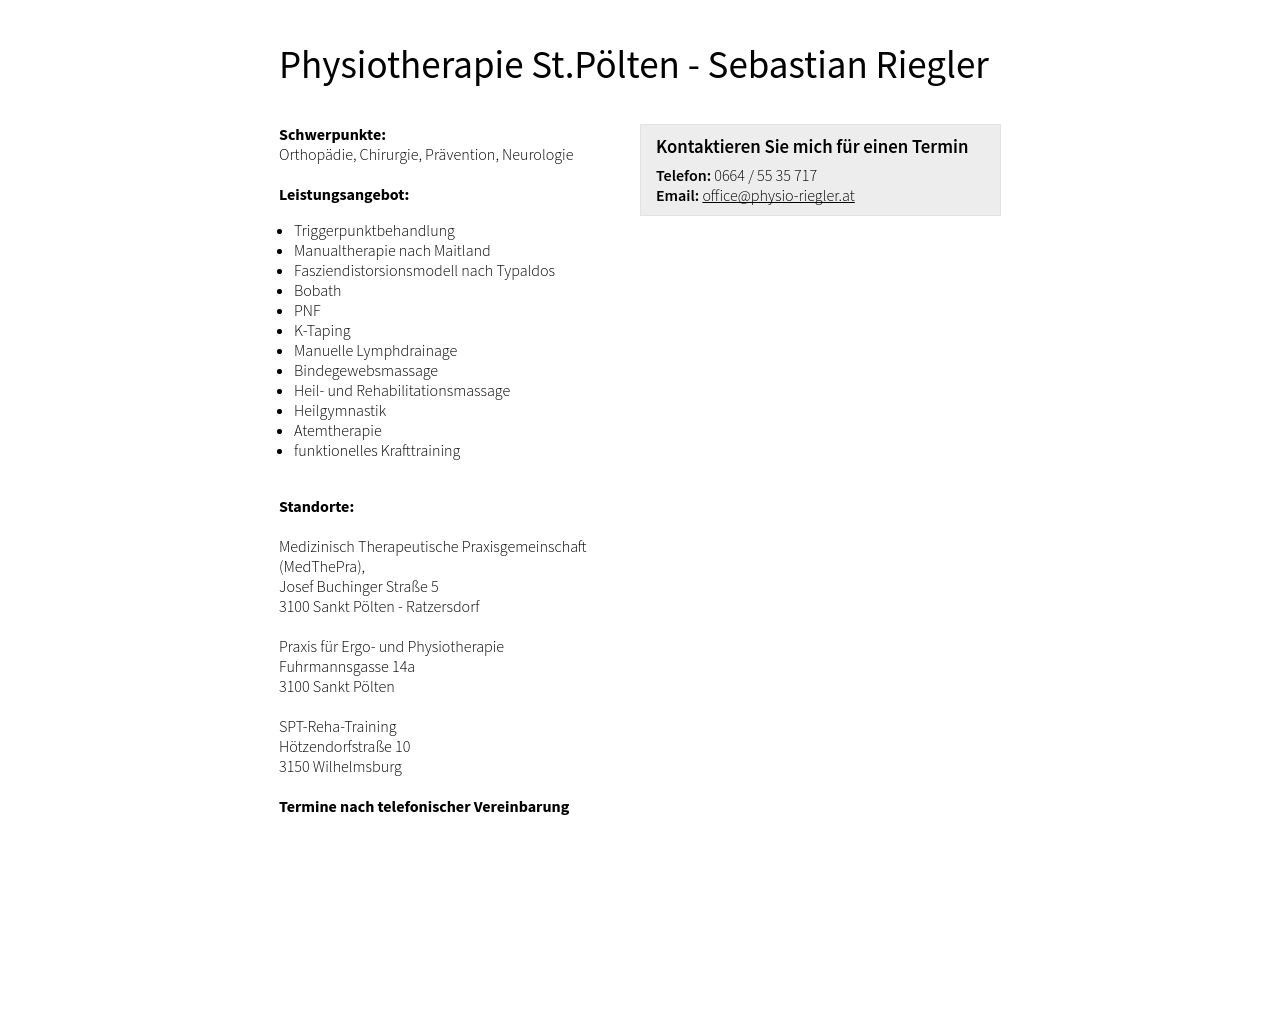 Bild Website physio-riegler.at in 1280x1024